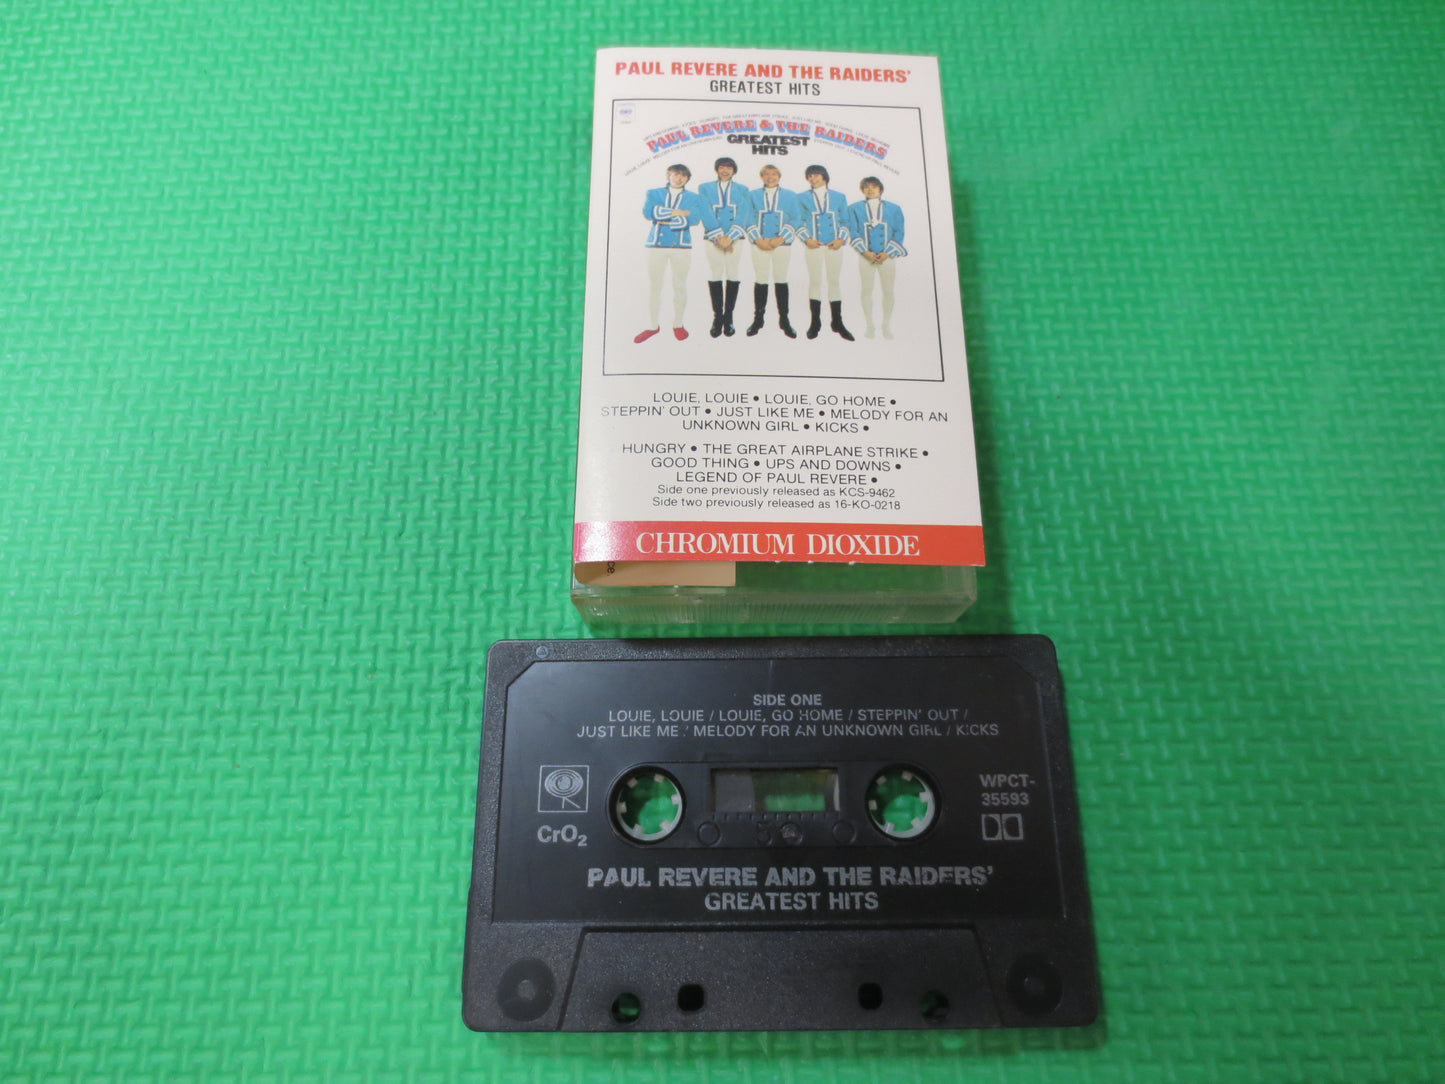 PAUL REVERE Tape, GREATEST Hits Tape, Paul Revere Album, Paul Revere Music, Tape Cassette, Rock Cassette, 1988 Cassette